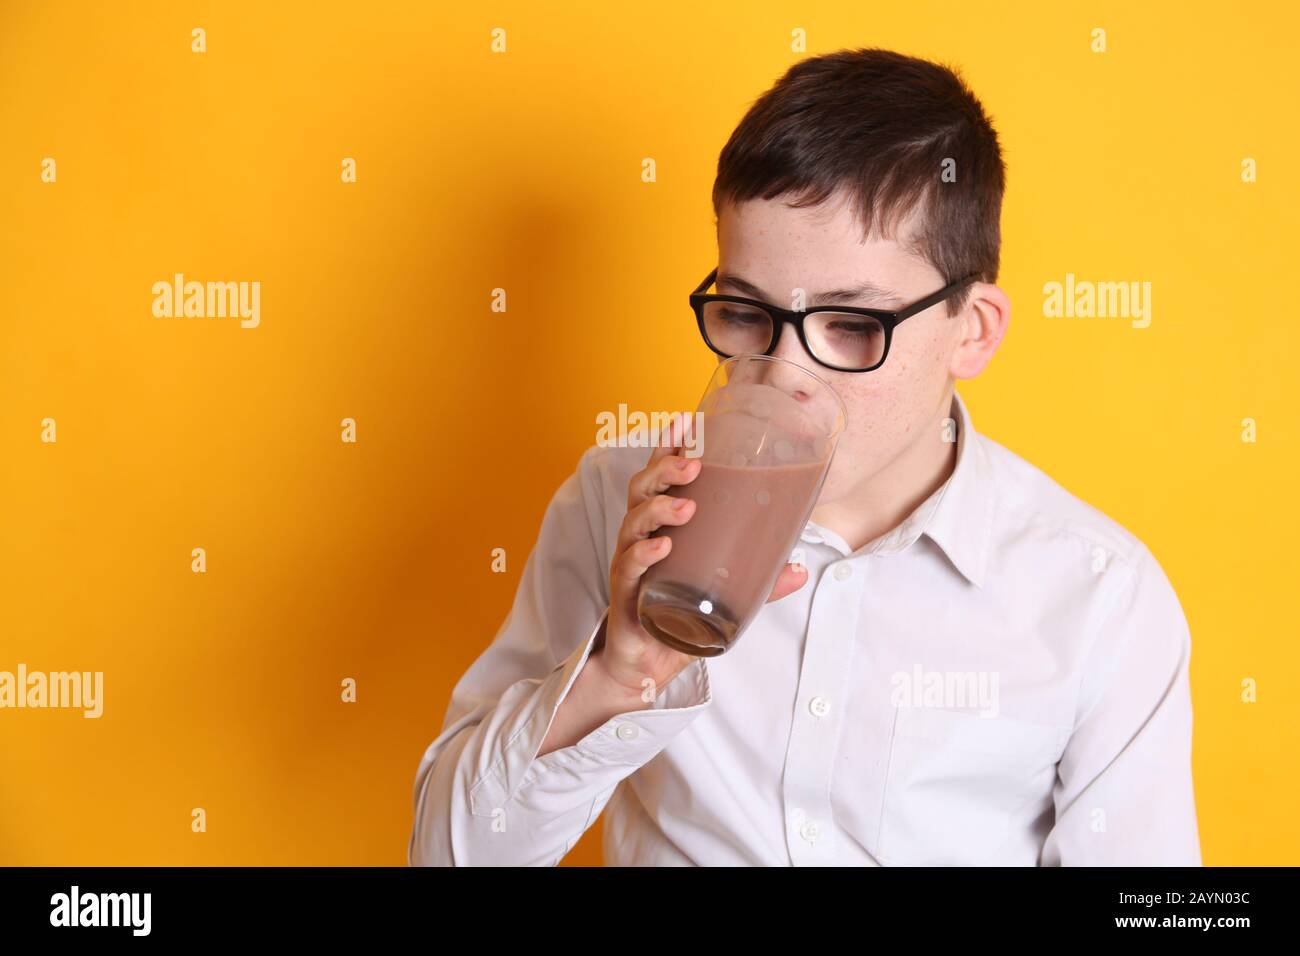 Un jeune garçon de 8 ans boit un verre de lait au chocolat avec une lèvre supérieure recouverte de chocolat sur fond jaune Banque D'Images